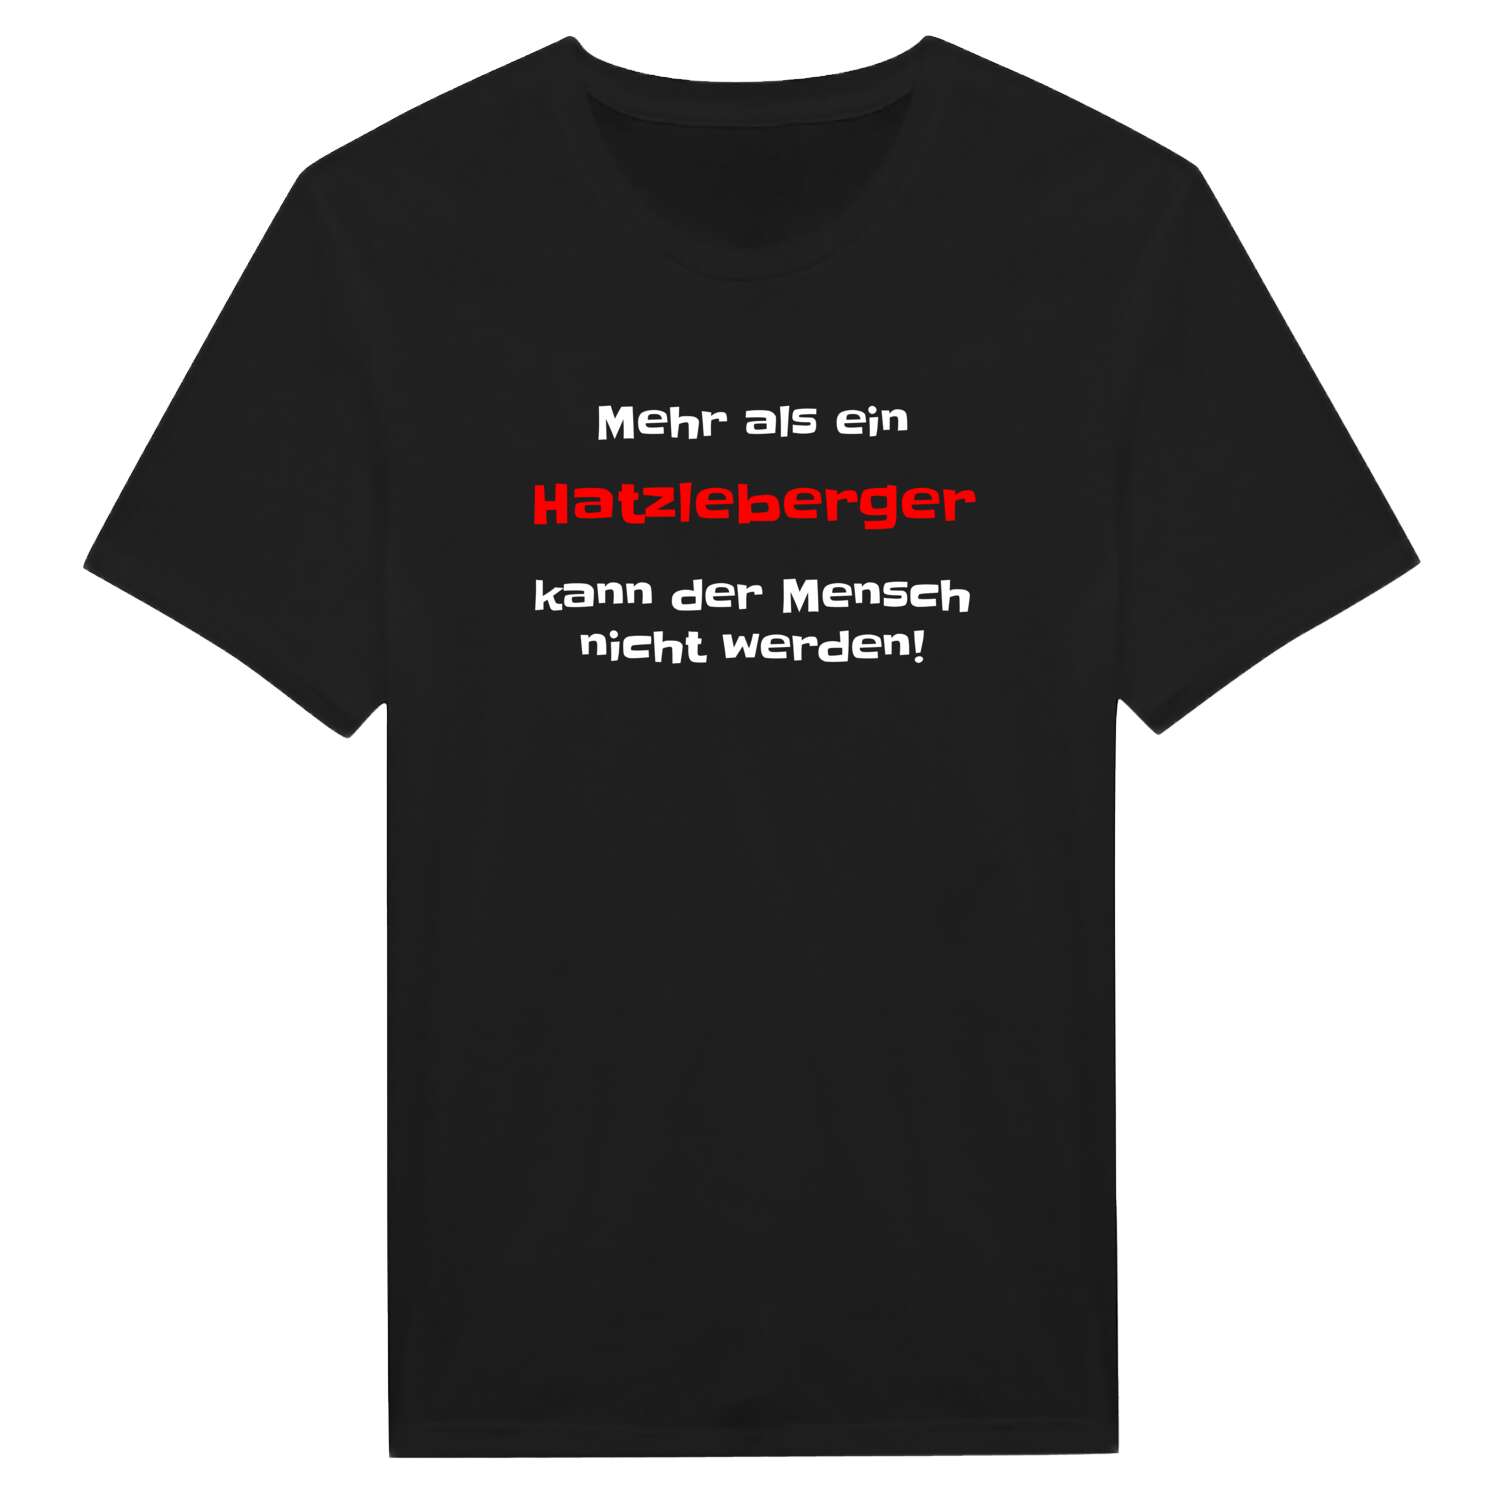 Hatzleberg T-Shirt »Mehr als ein«